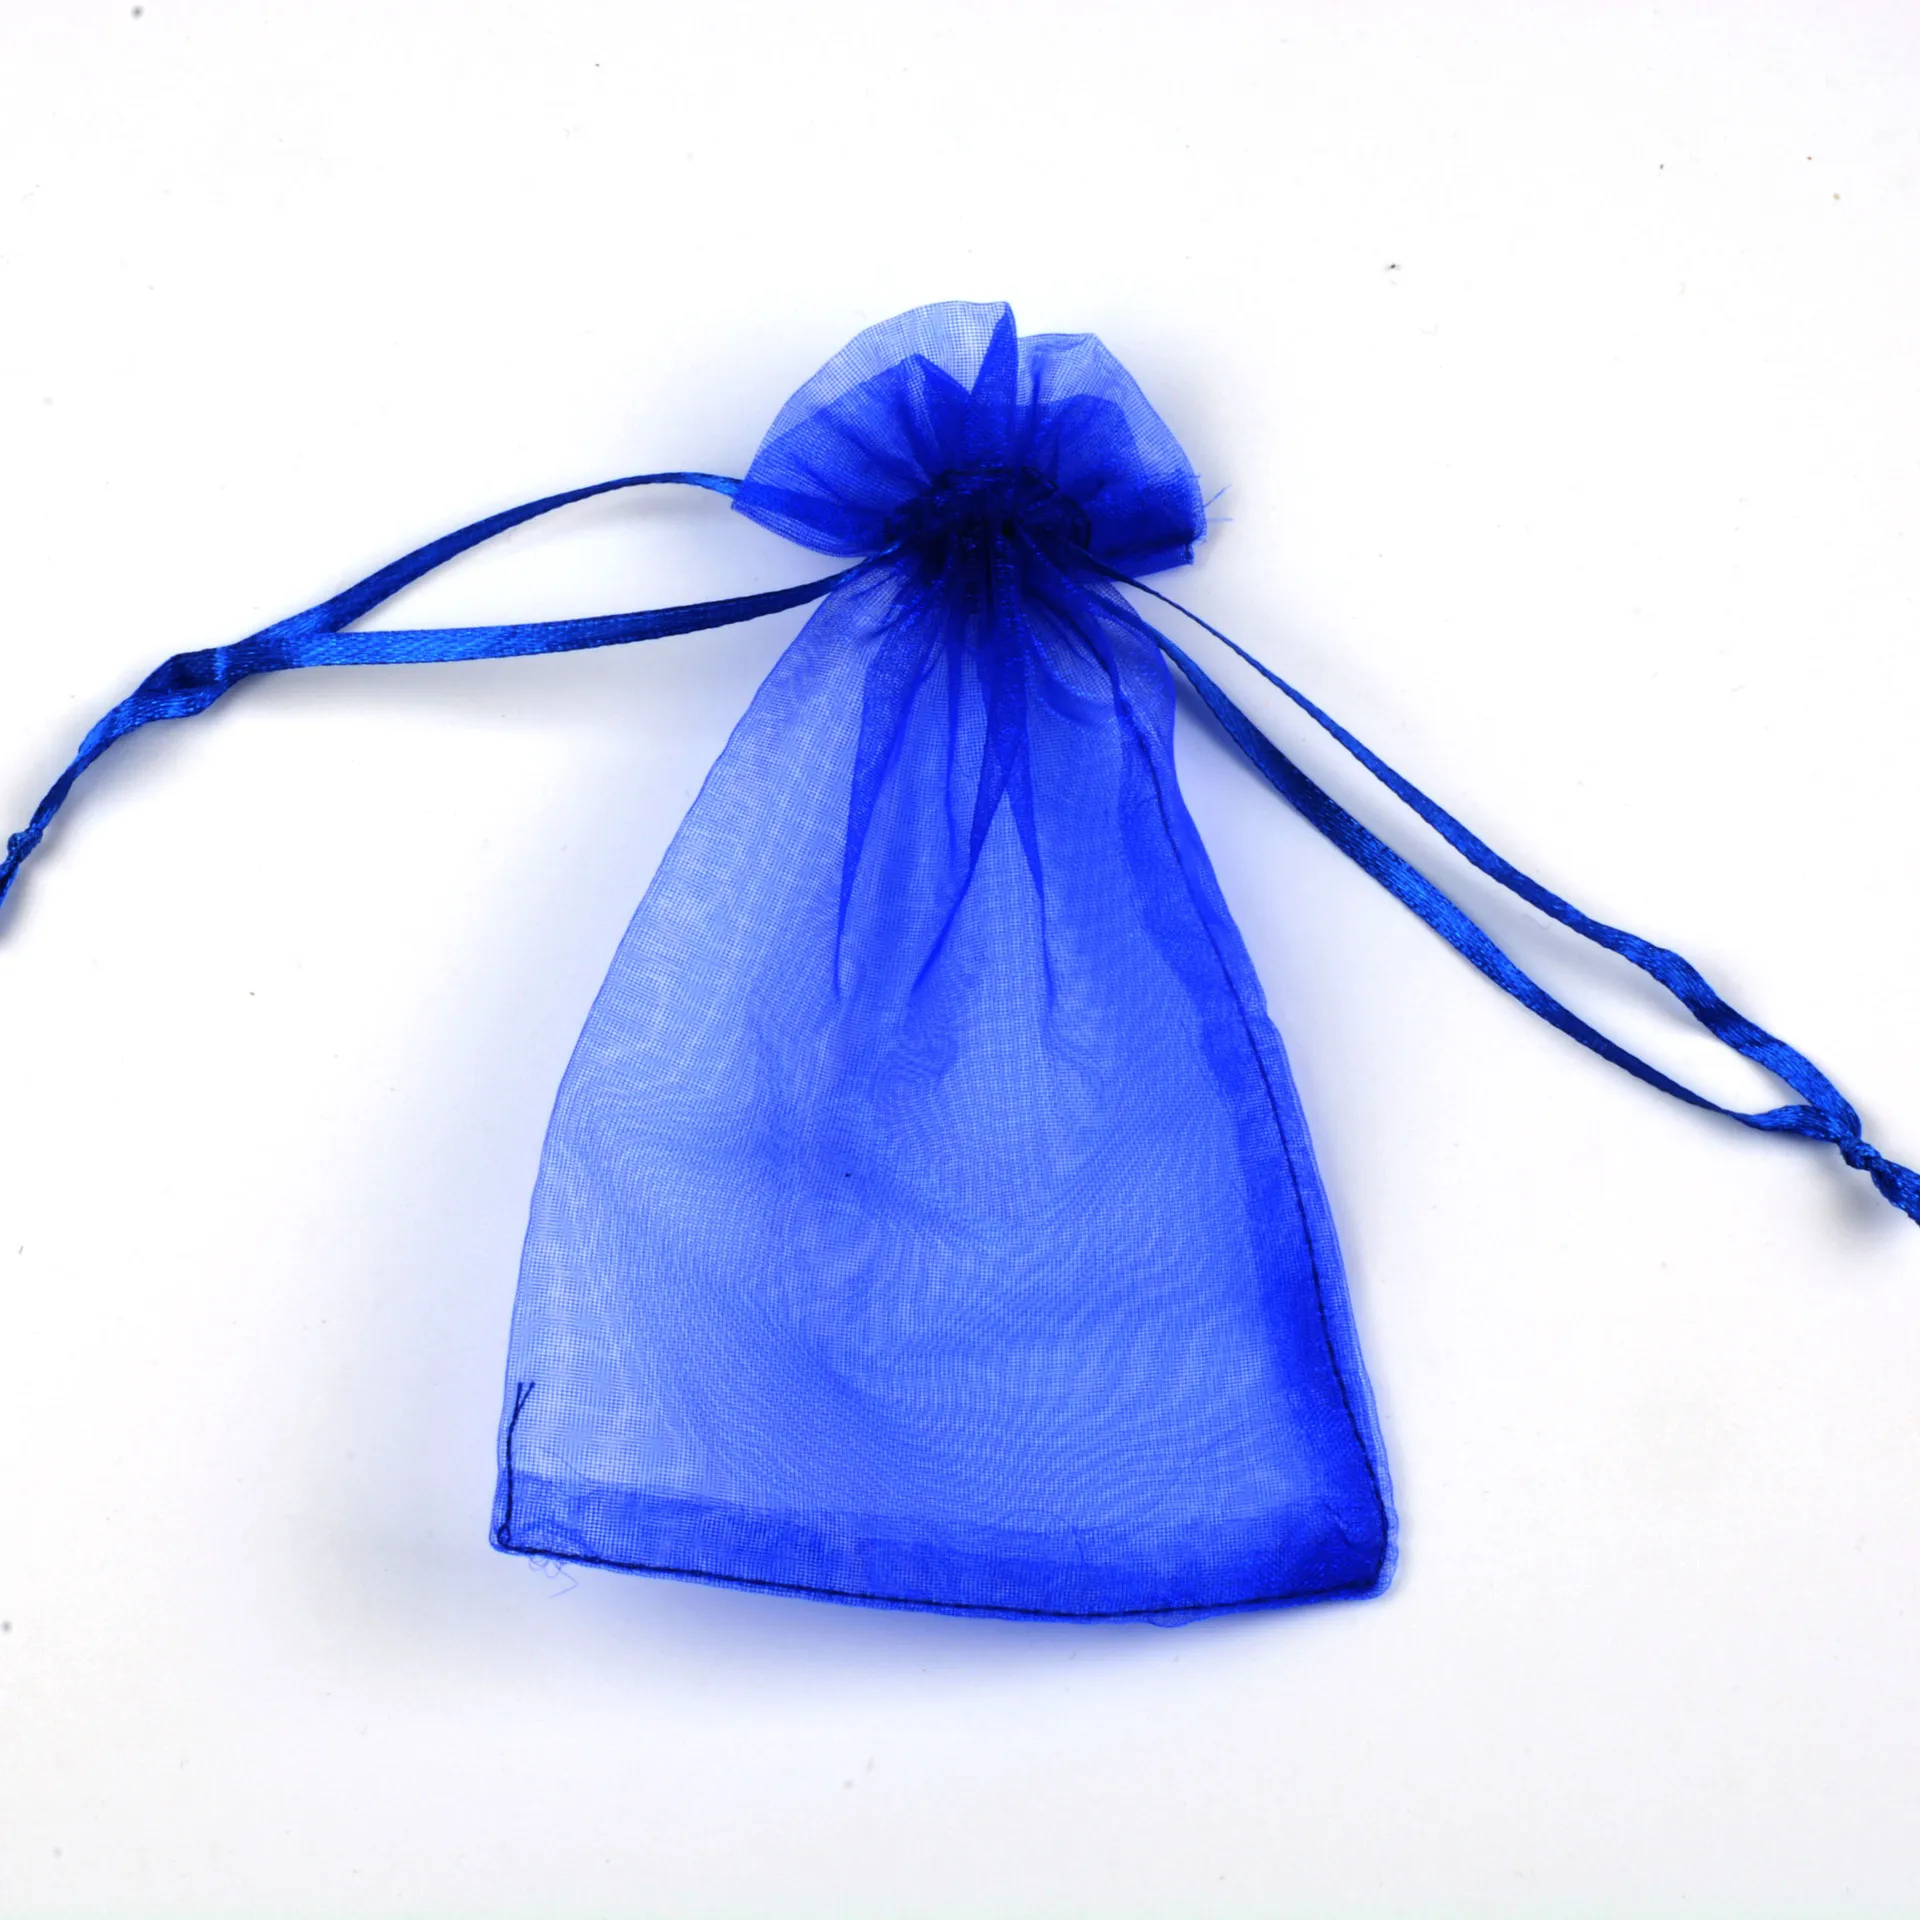 80 шт сумка Карманный Свадебный сахарный жемчуг пряжа мешочек для украшений Упаковка мешок пятна оптом 5X7 см 7X9 см 9X12 см 10x15 см - Цвет: Navy blue